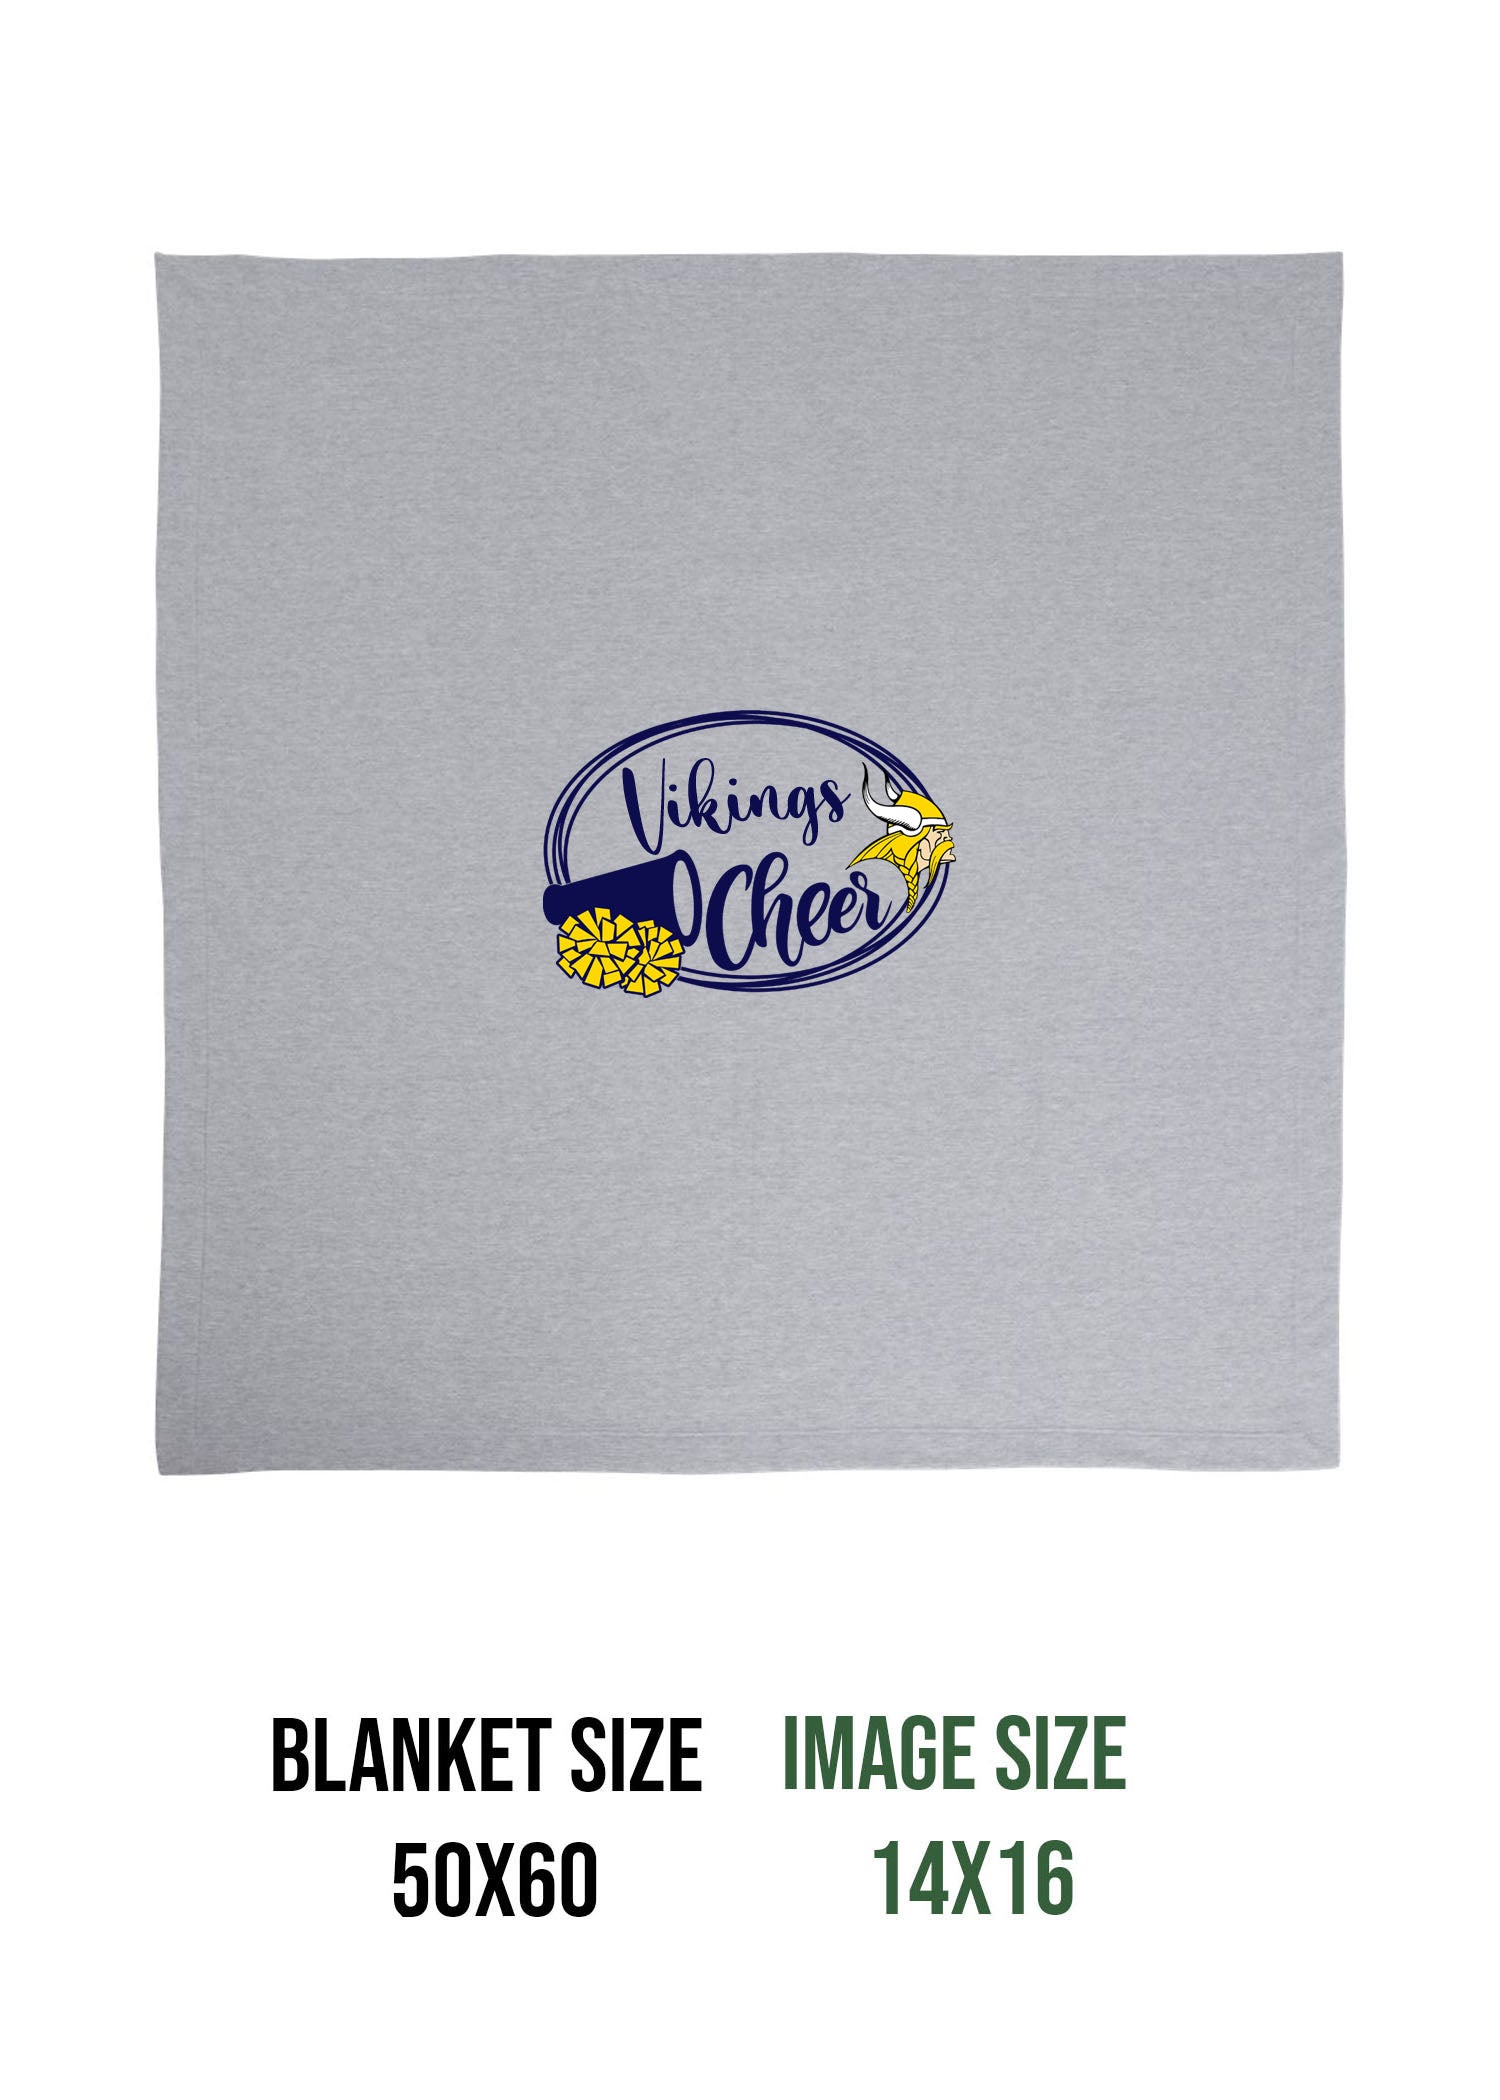 Vikings Cheer design 1 Blanket